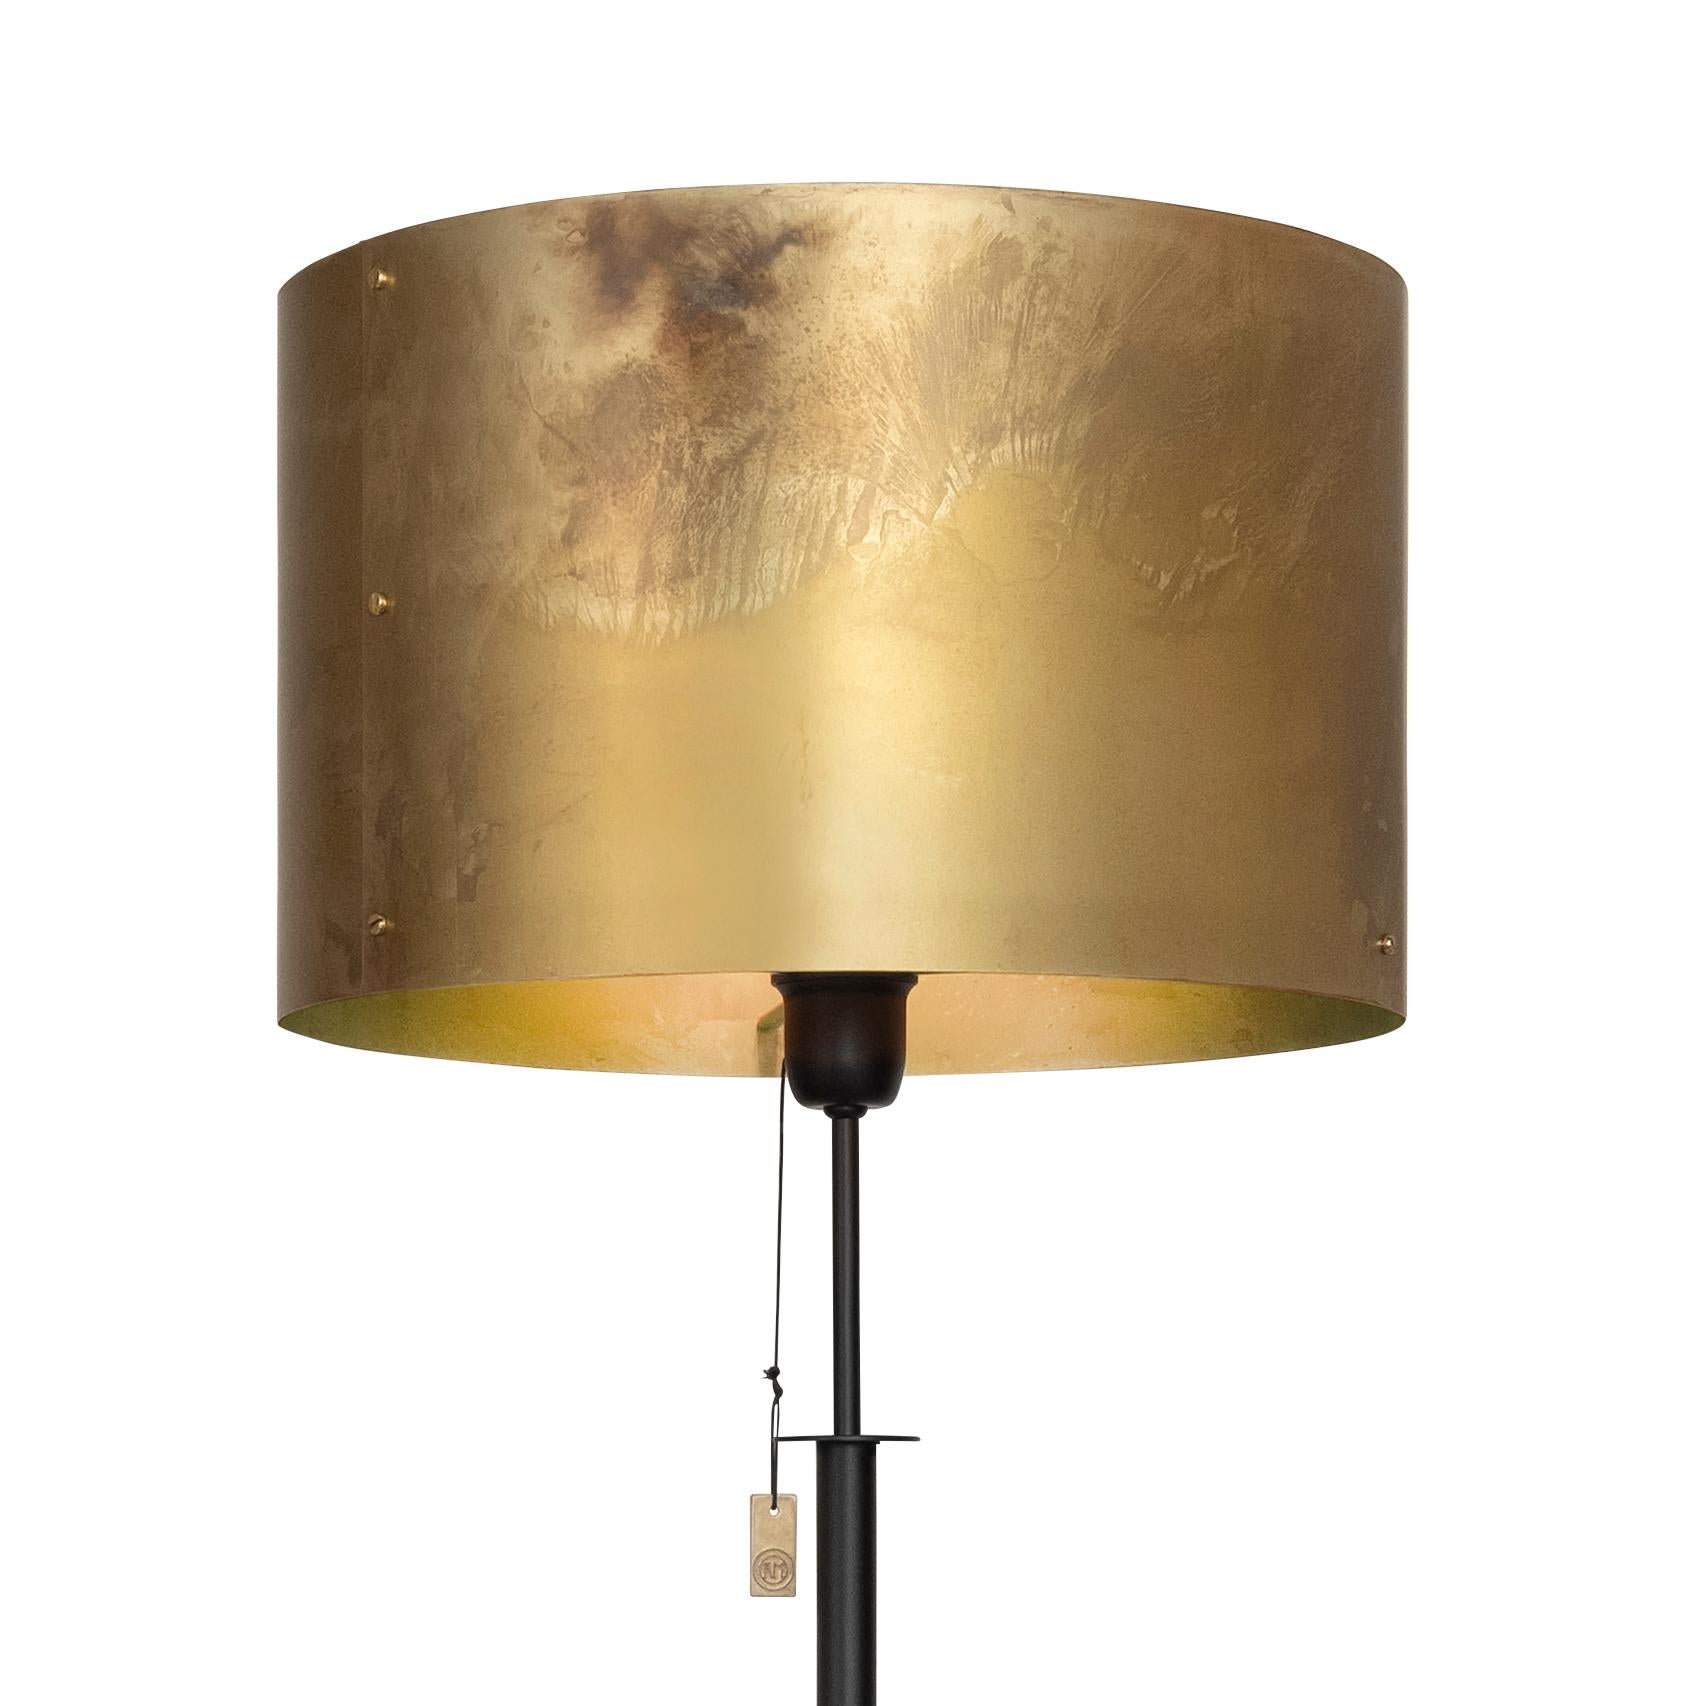 Lampe modèle Svep lampadaire conçu par Konsthantverk et fabriqué par eux-mêmes.

La production de lampes, d'appliques et de lampadaires est réalisée de manière artisanale avec les mêmes matériaux et techniques que les premiers